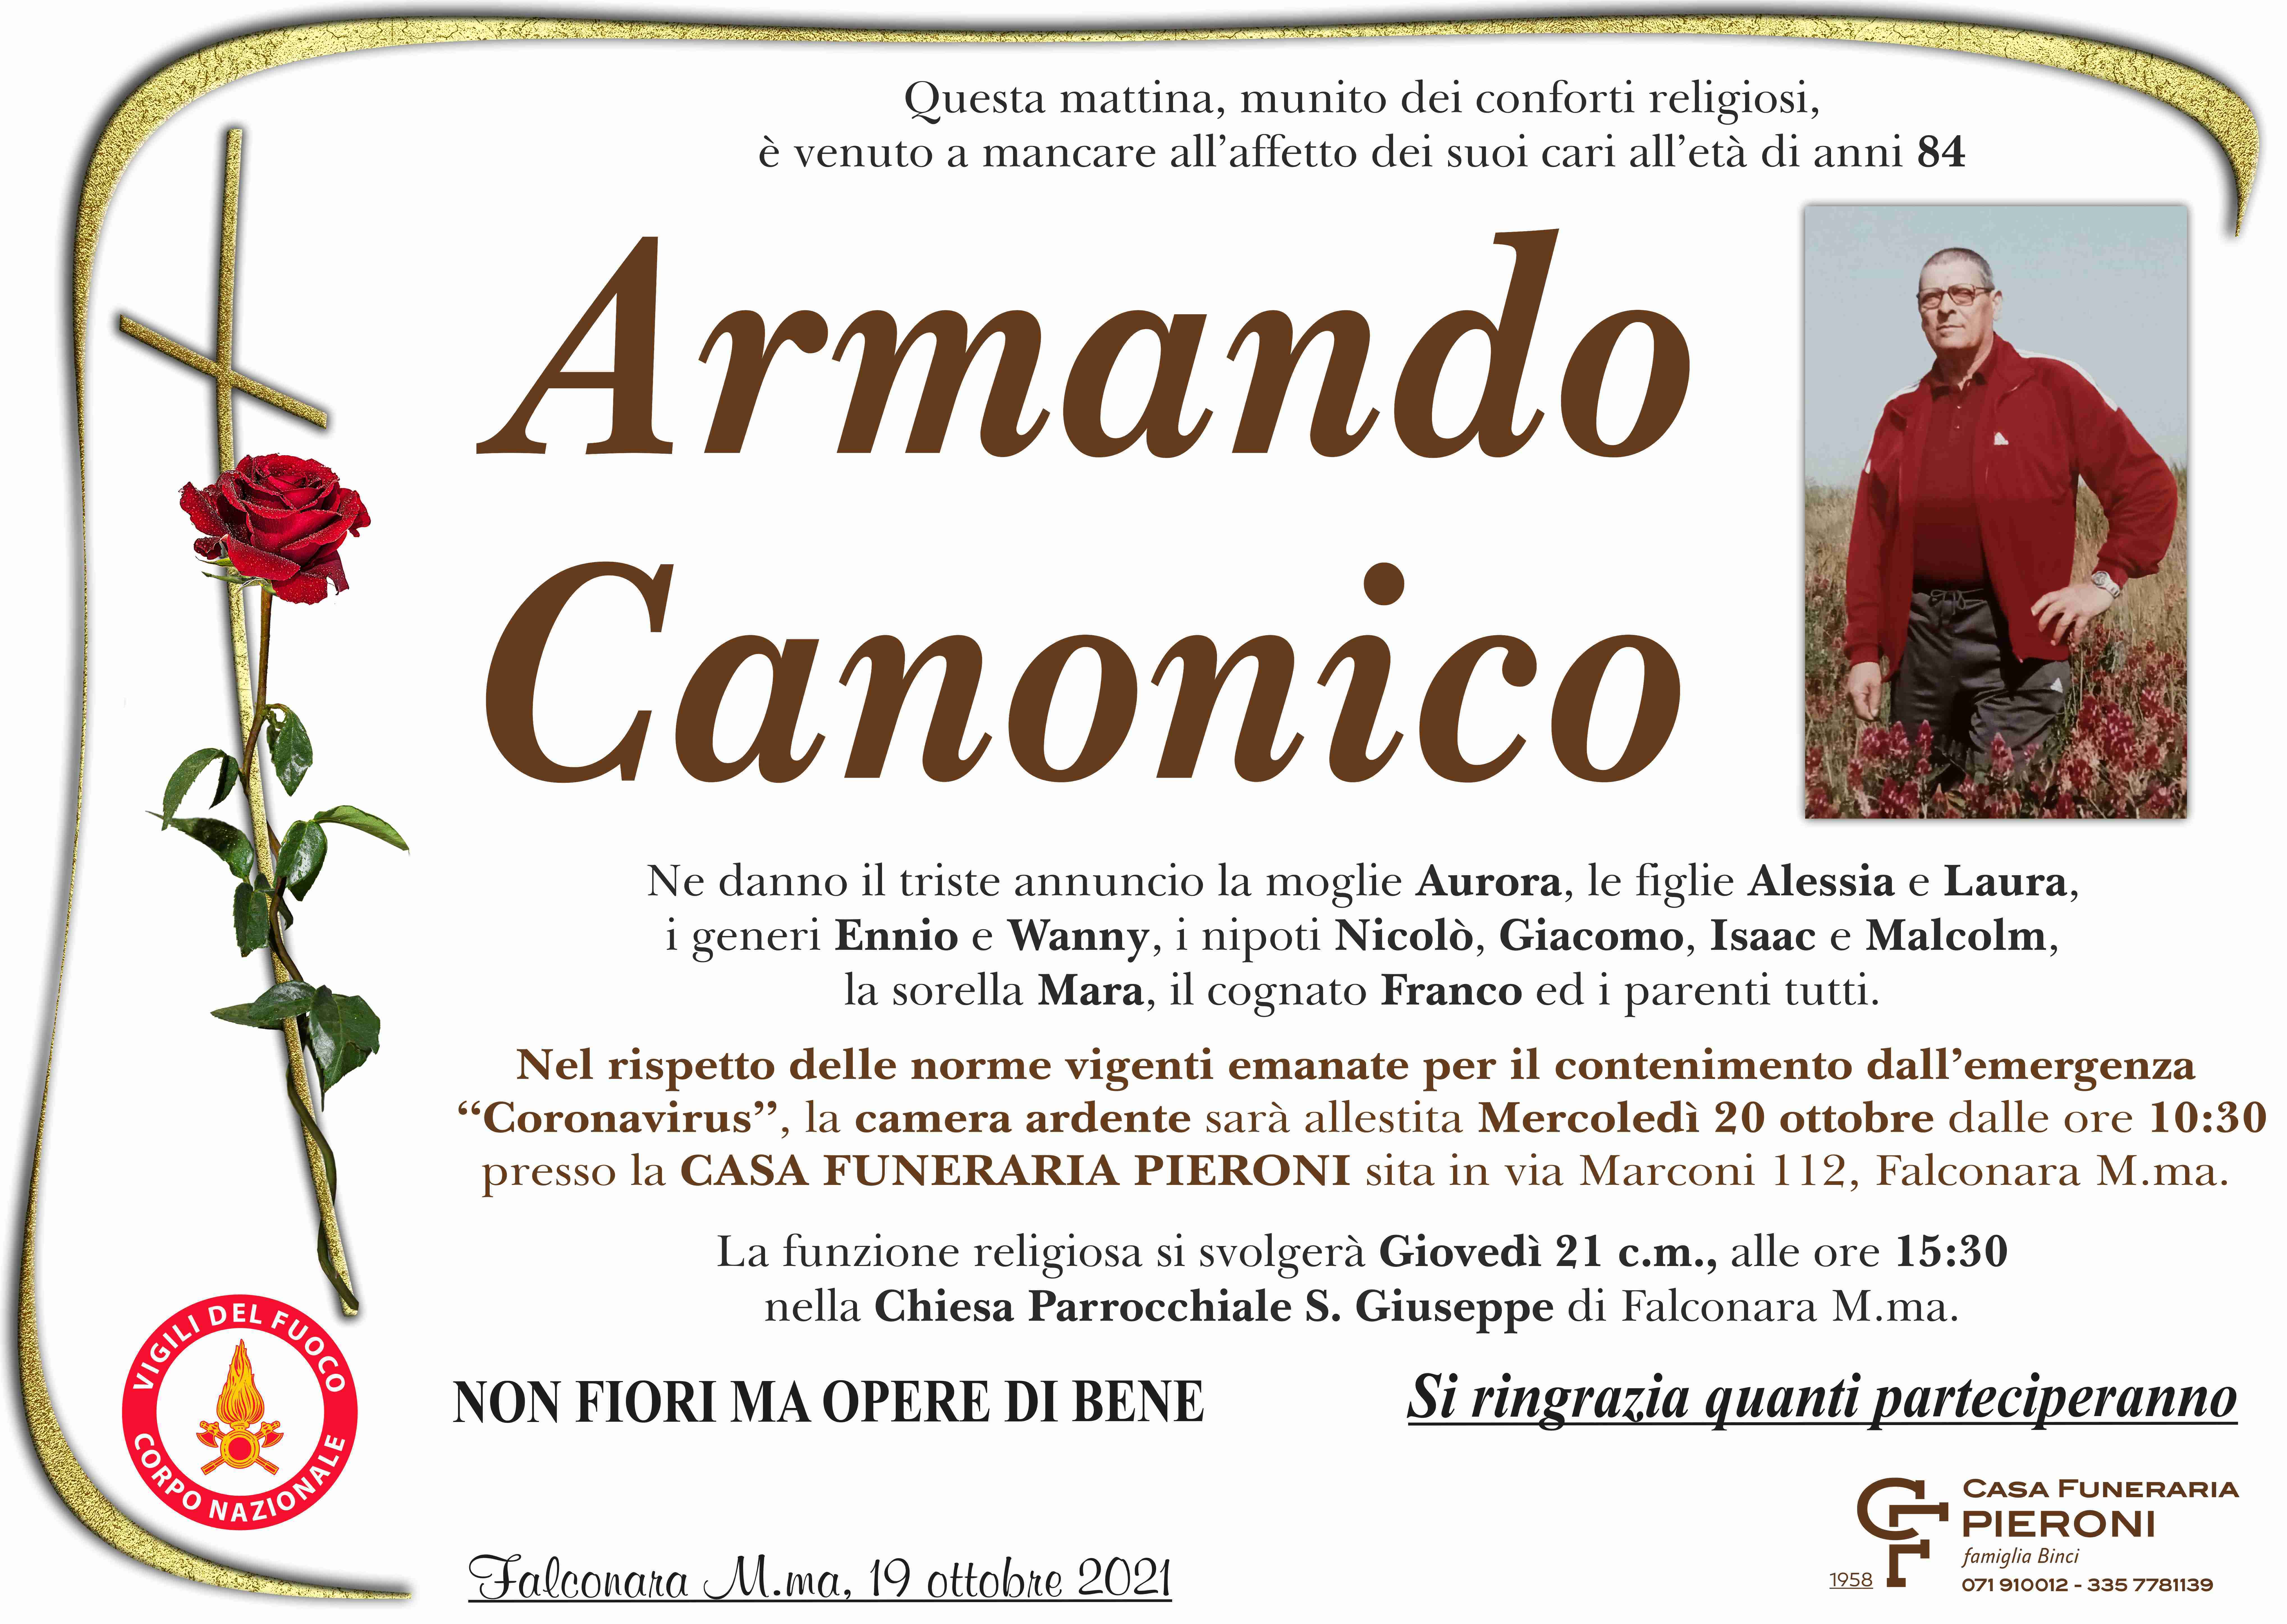 Armando Canonico